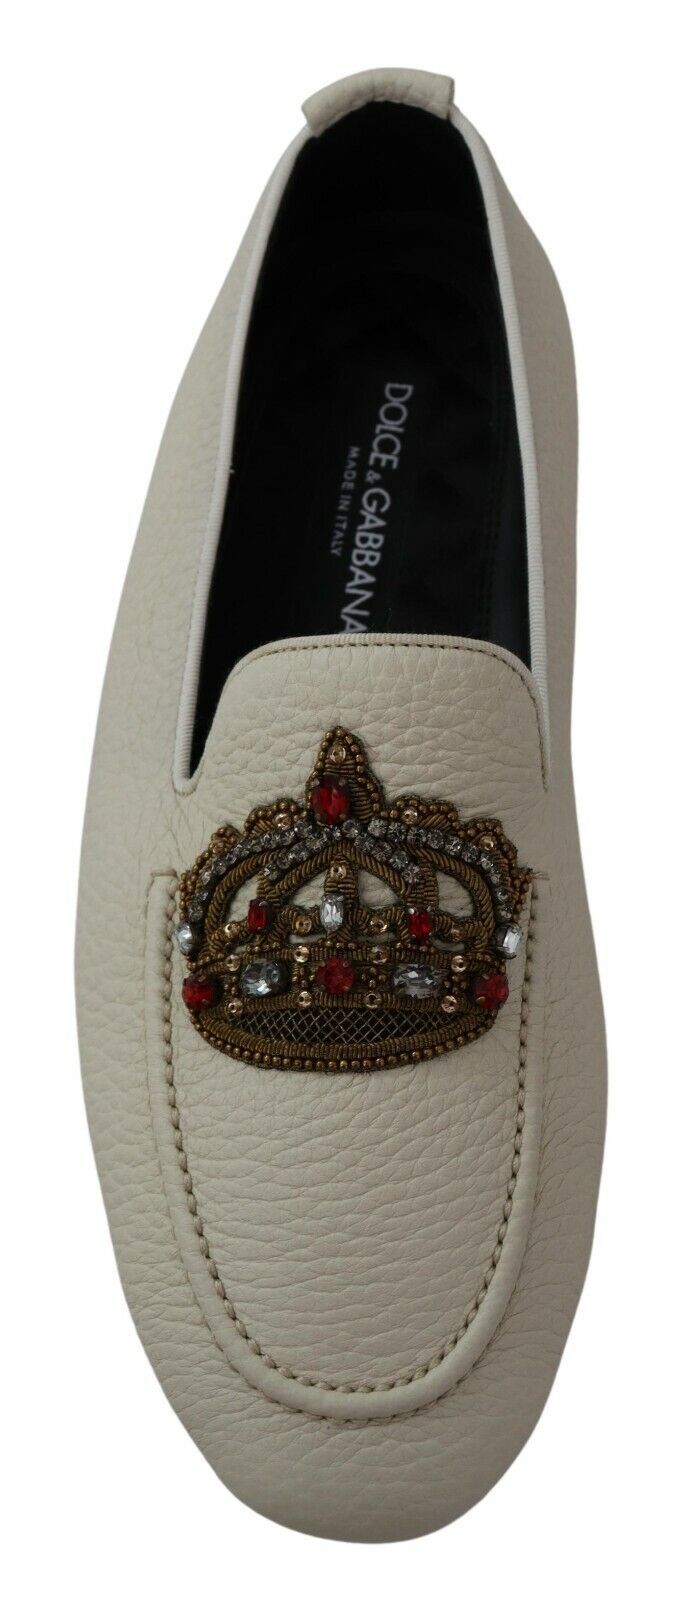 Dolce & Gabbana Elegant Beige Leather Loafers Slides Dress Shoes